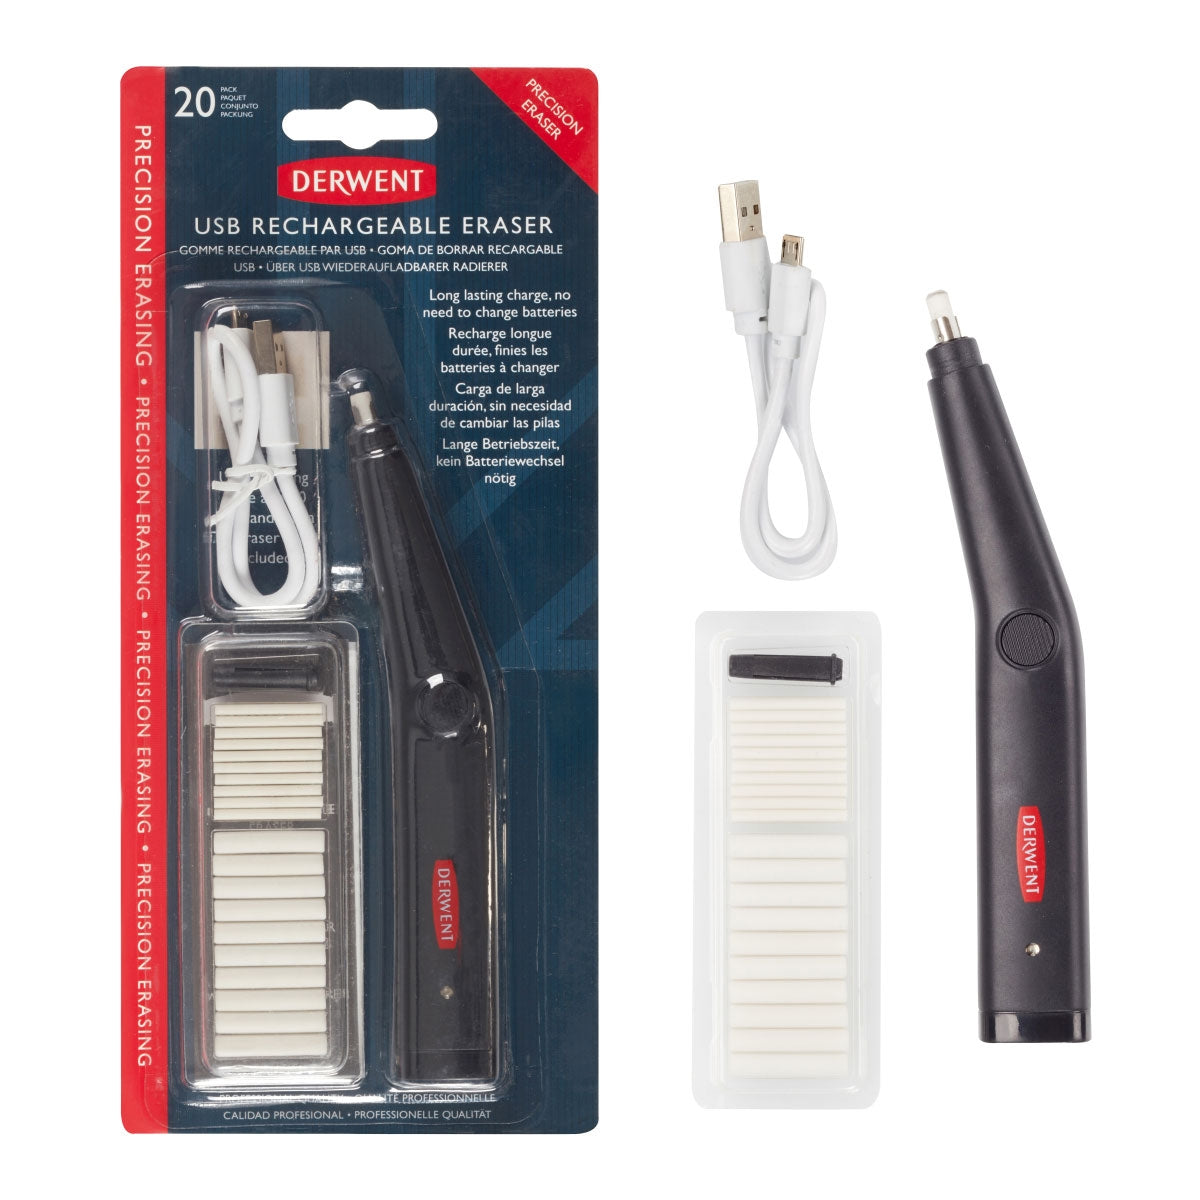 Derwent - Eraser rechargeable USB (avec remplacement)